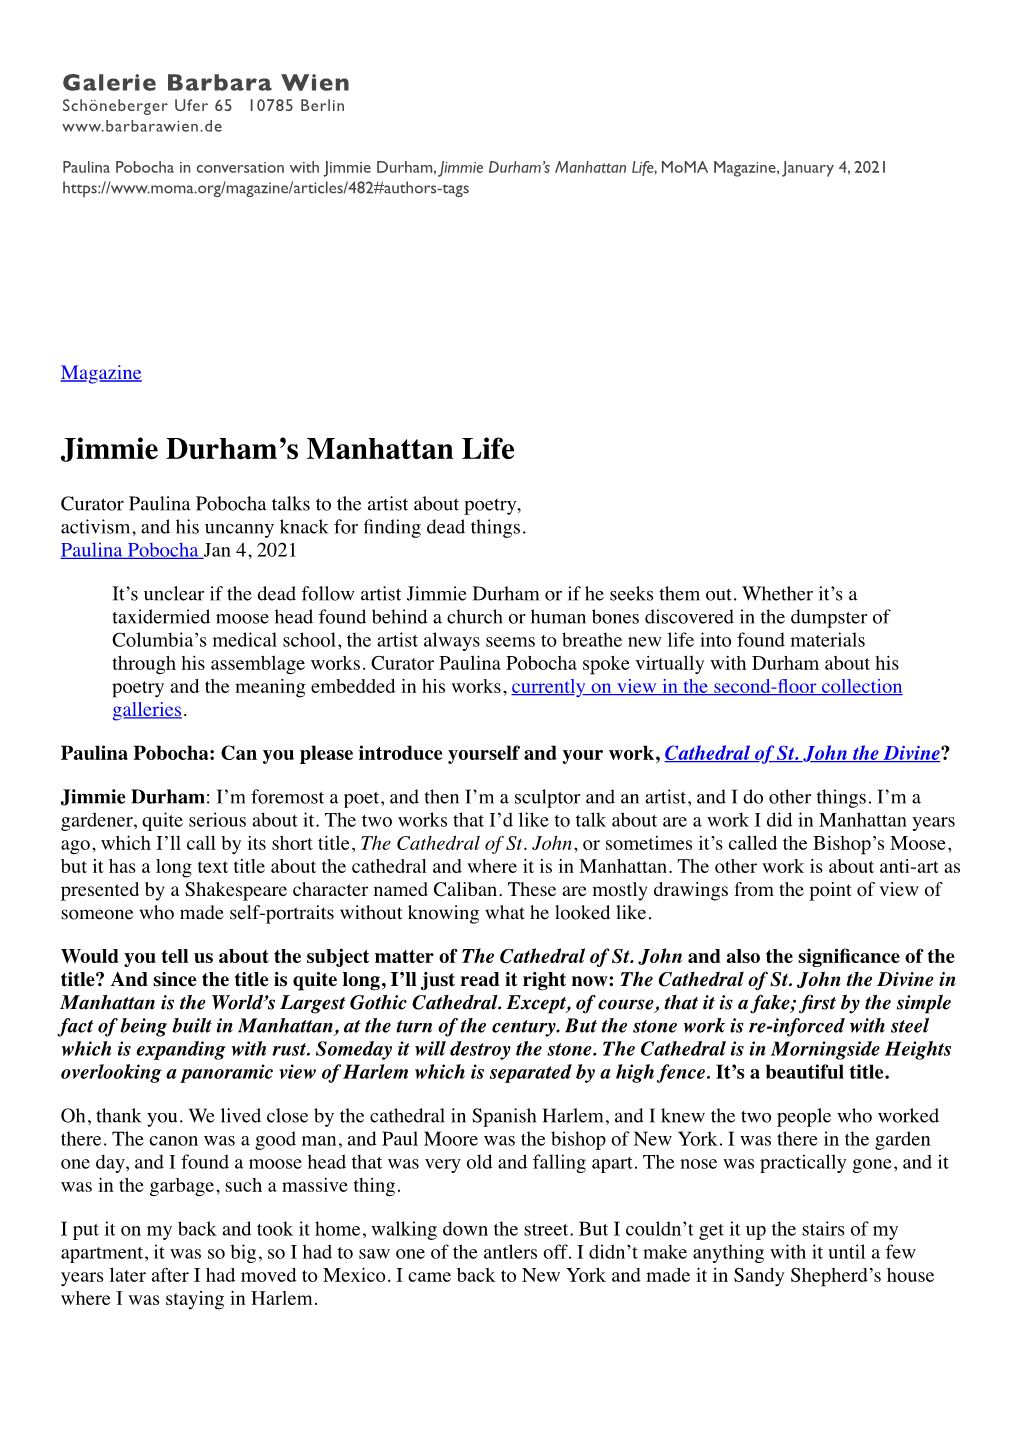 Jimmie Durham's Manhattan Life